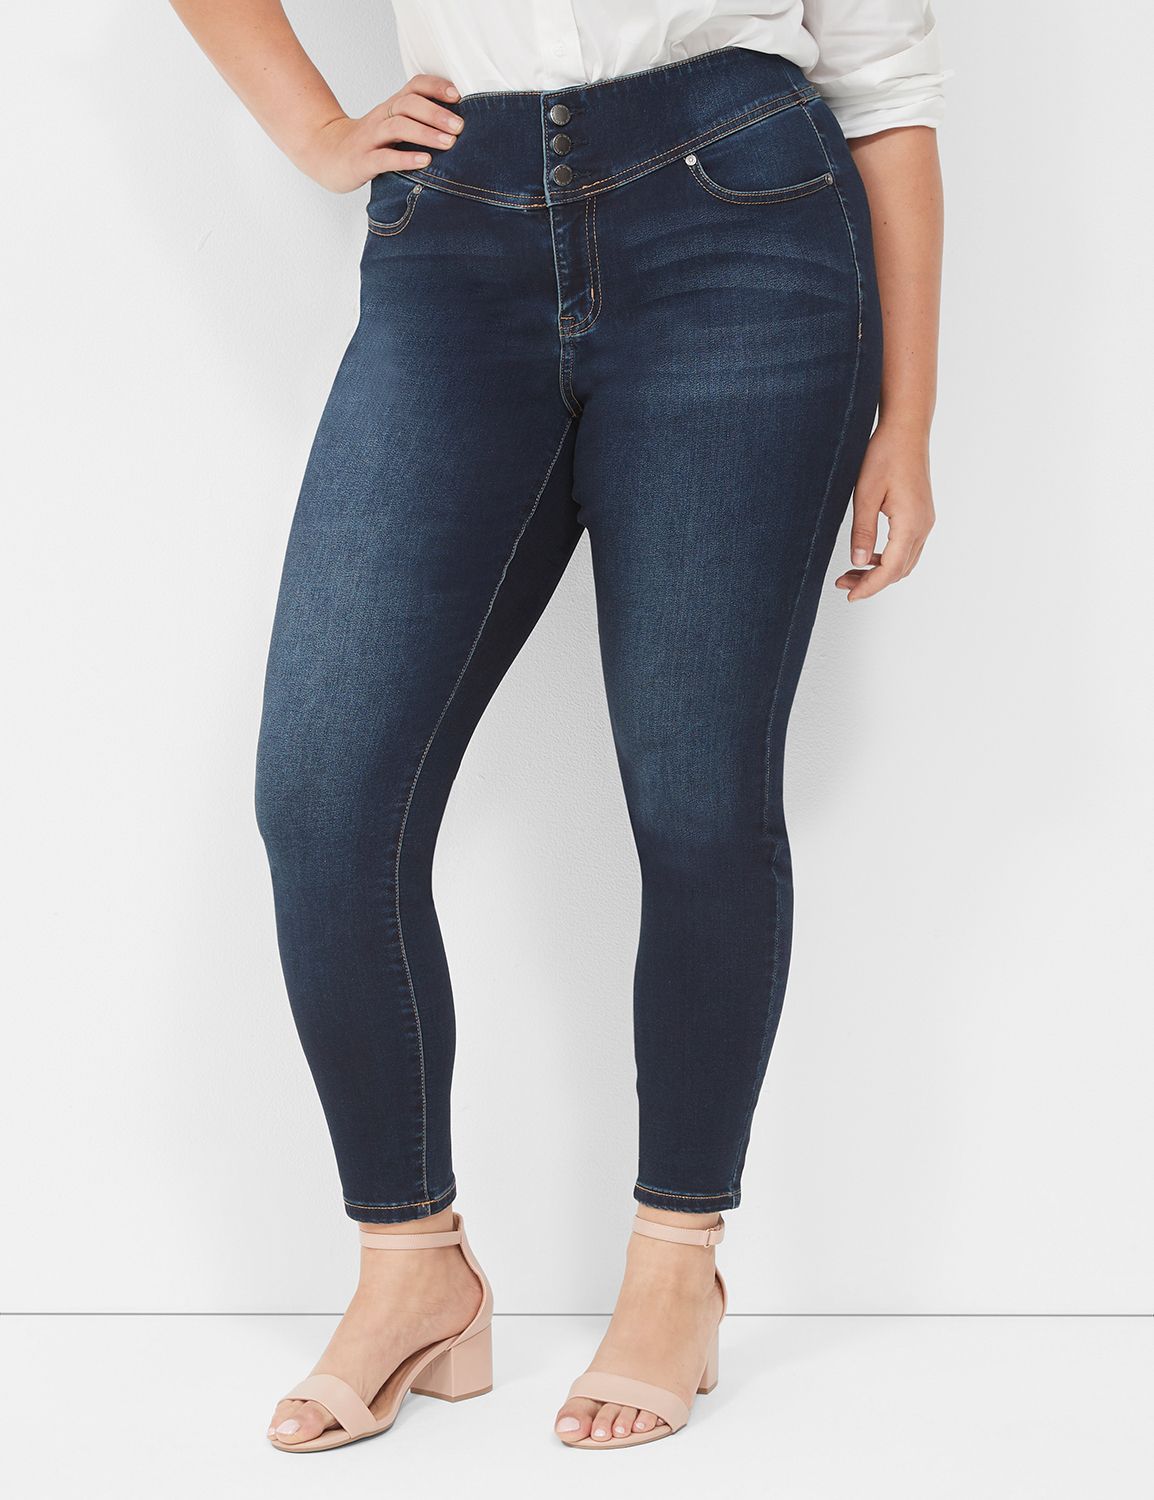 Women's Size 16 Plus Size Skinny Jeans | Bryant